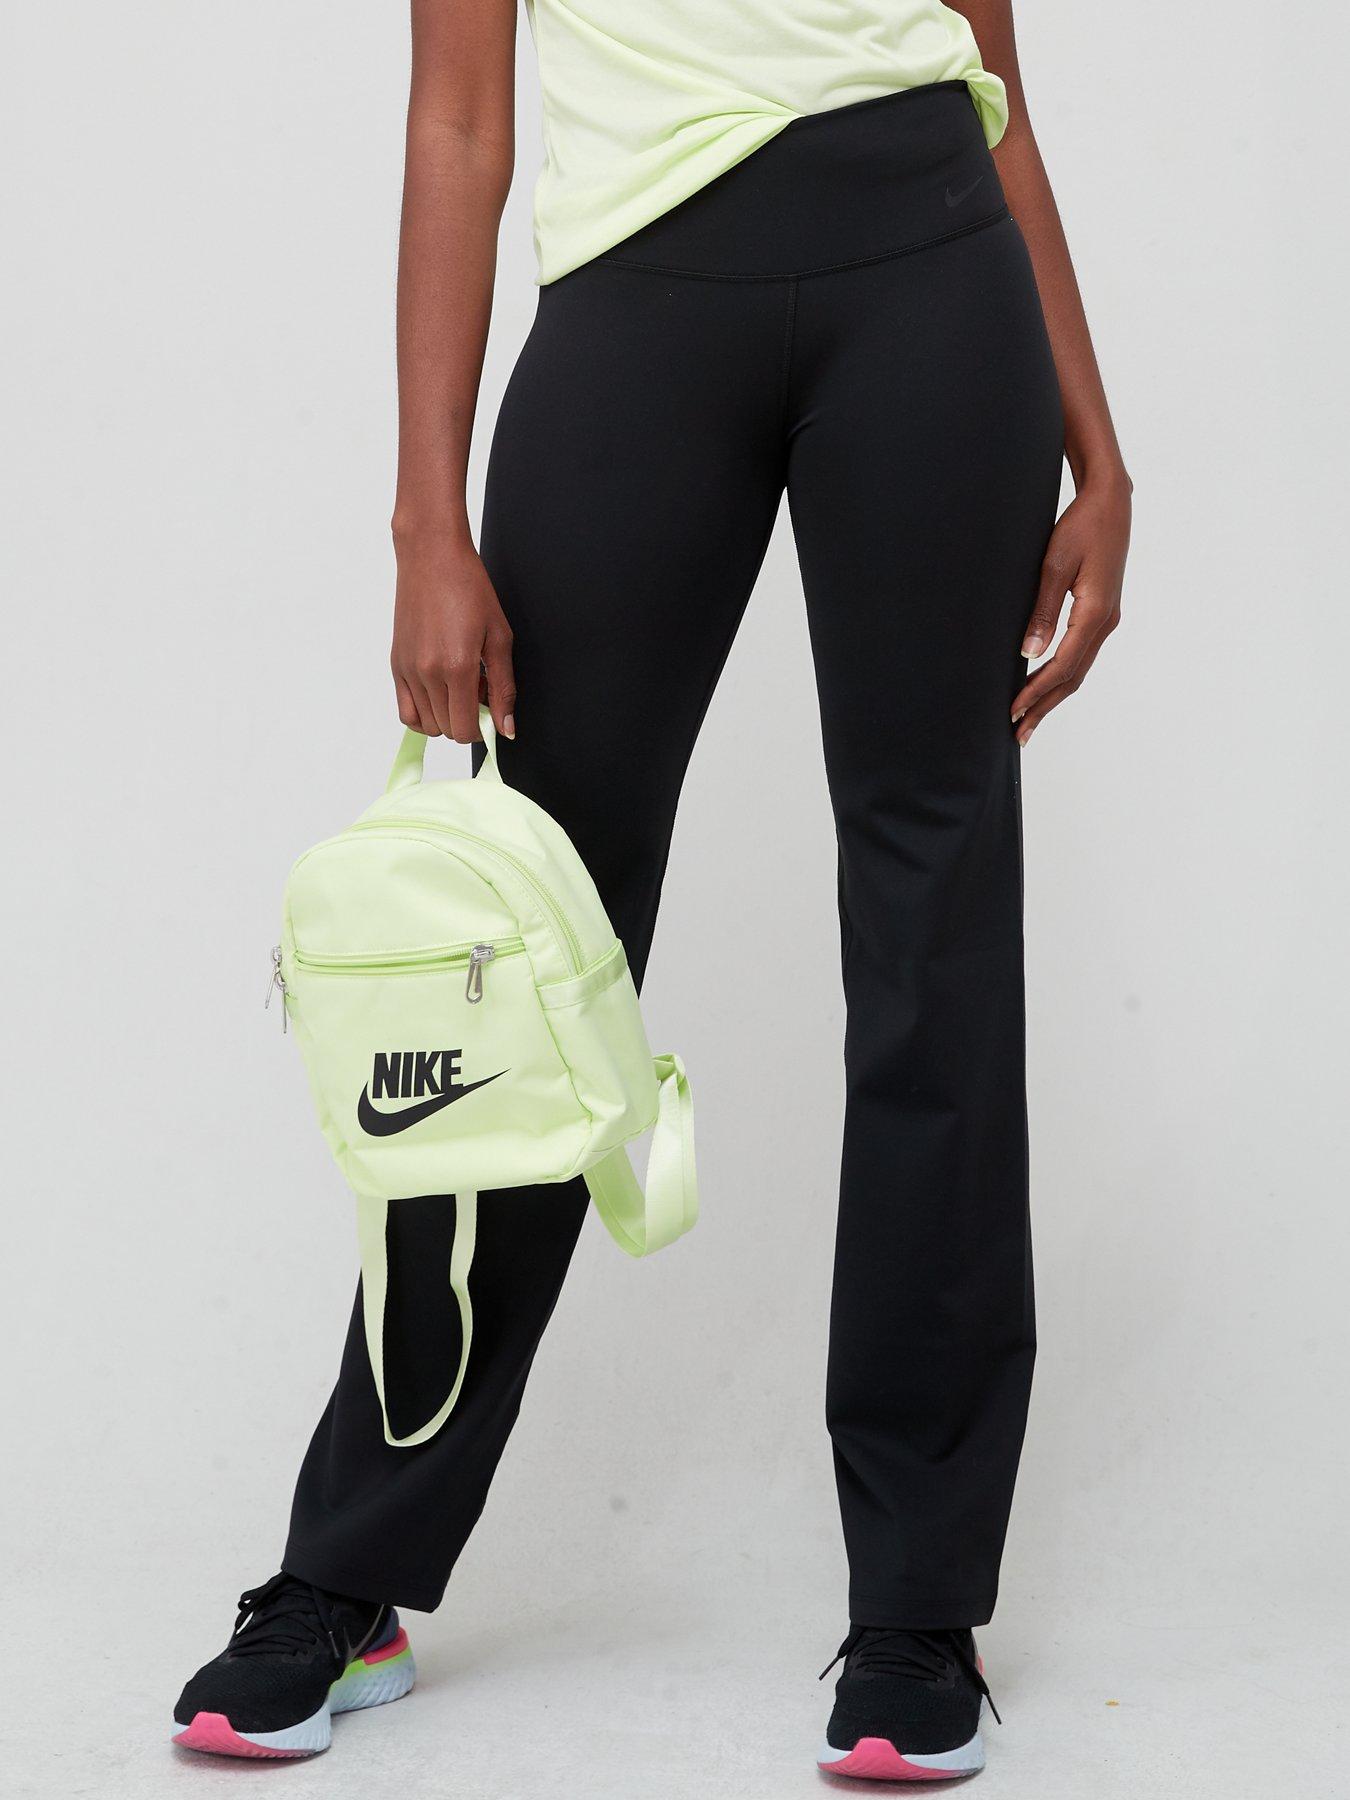 Nike Women's Leg-A-See Just Do It Sportswear Training Gym Leggings Size S 